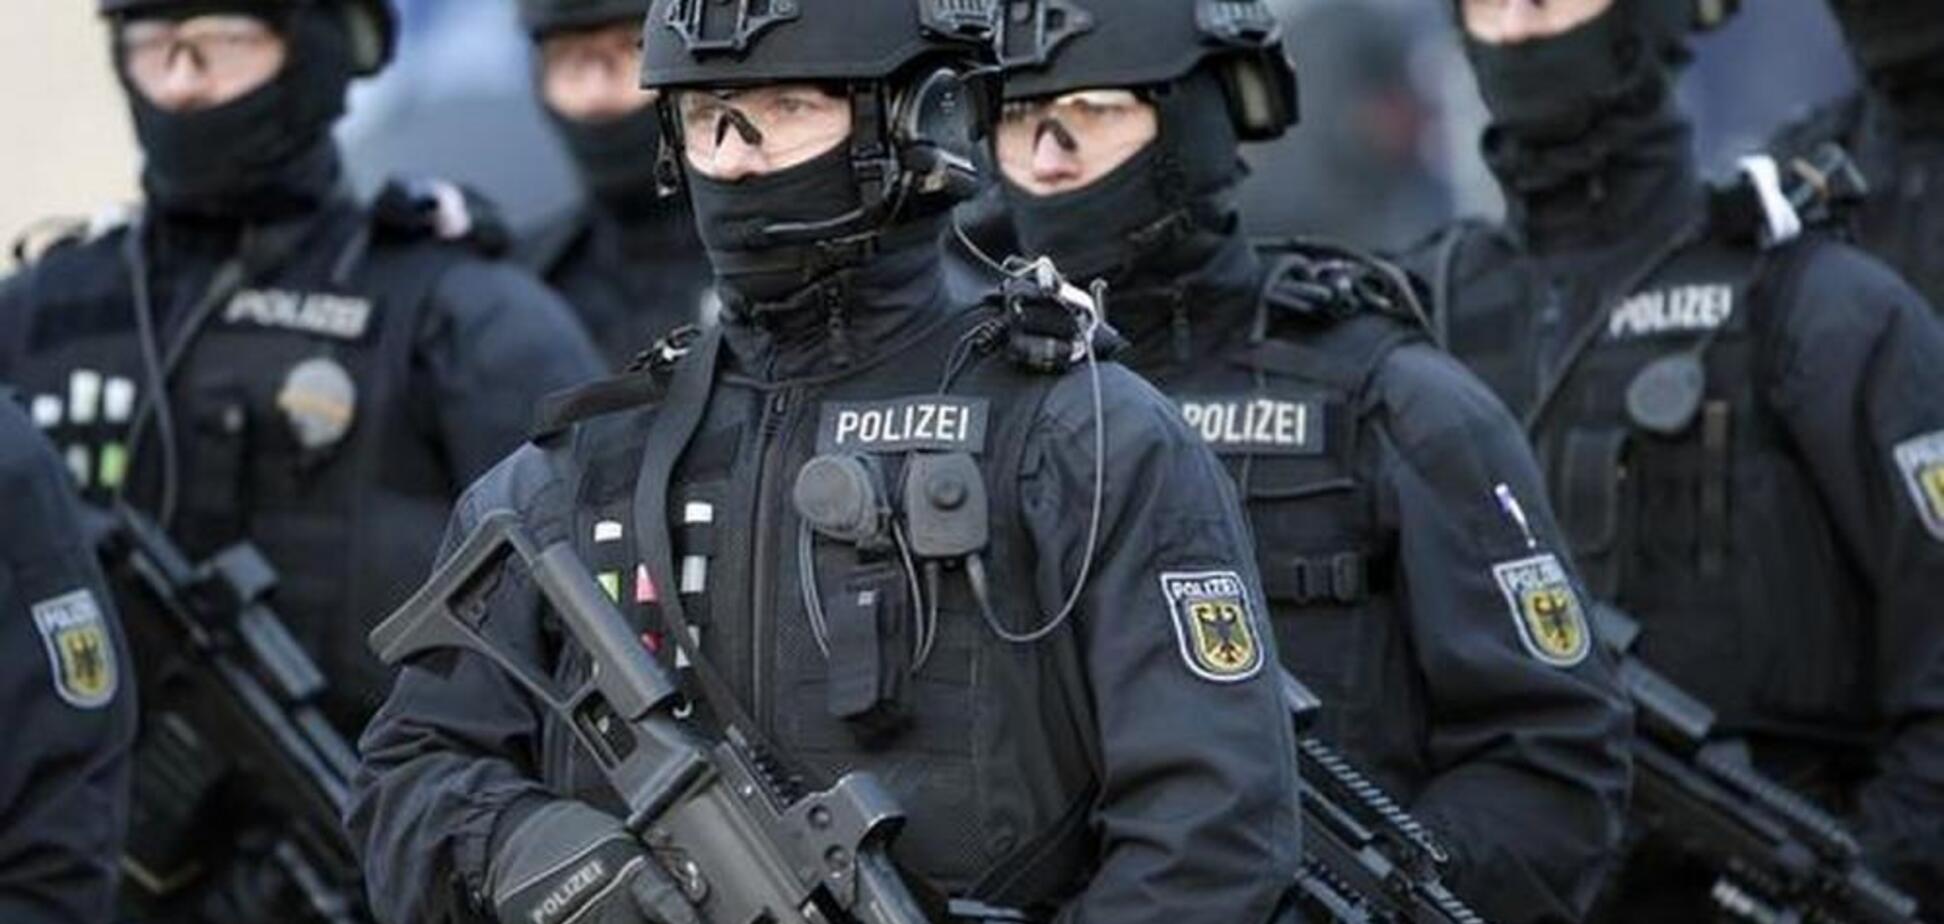 Хотели убить 'неверных': в Германии задержана опасная группа террористов